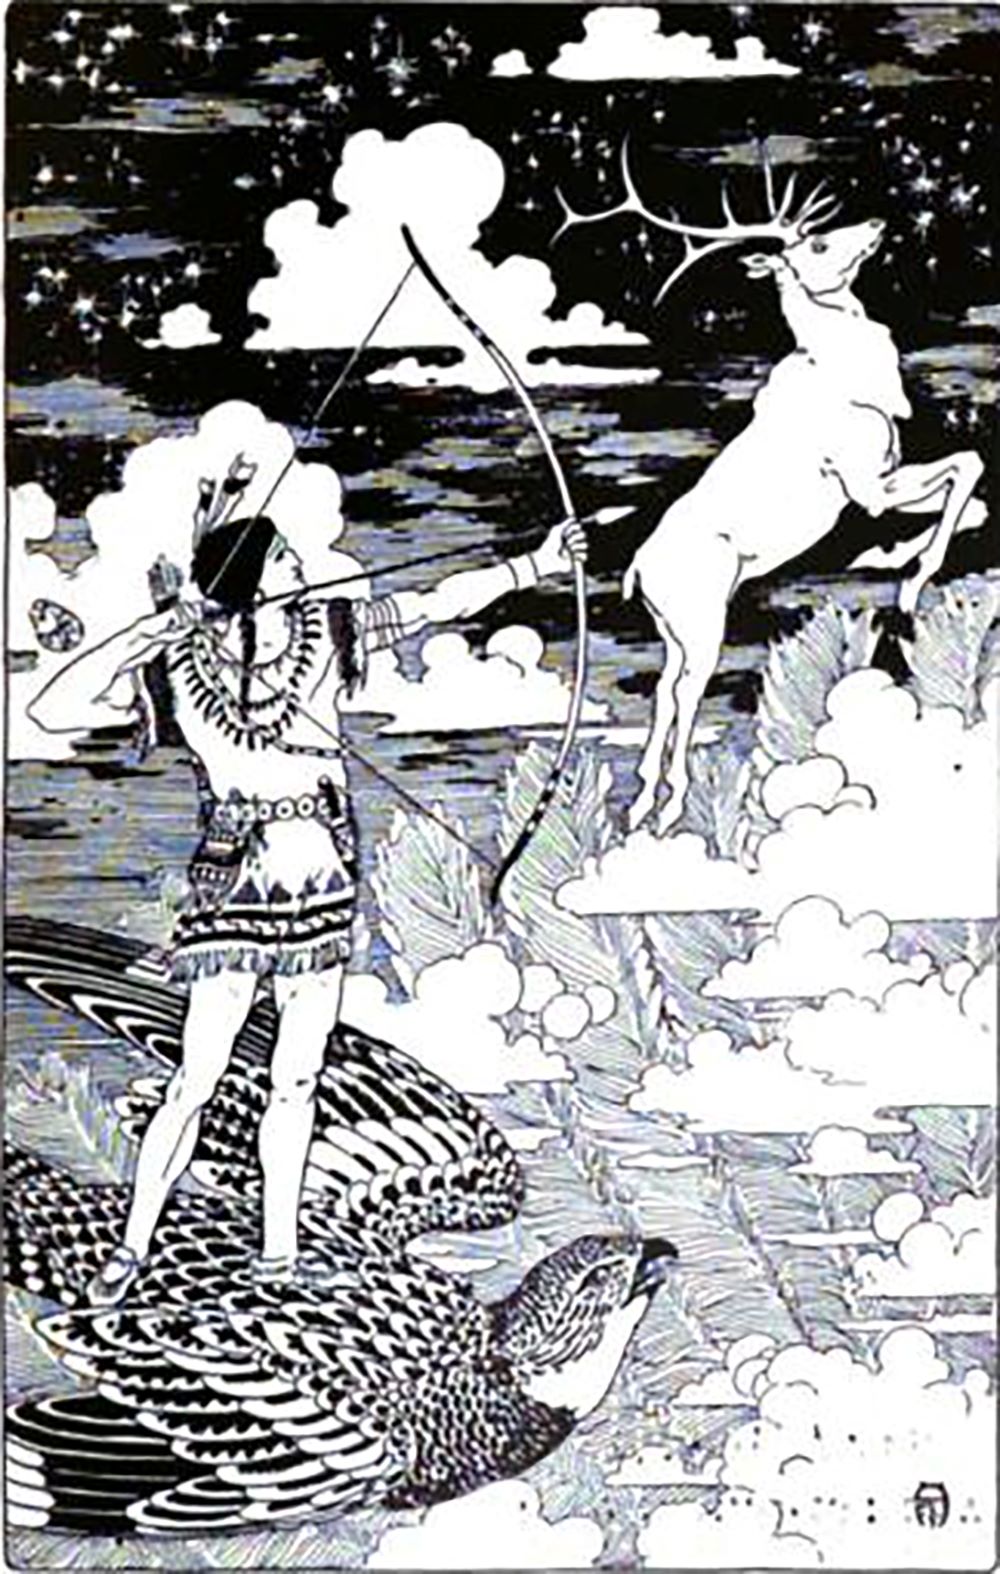 Sosondowah på jagt efter Himmel Elgen; irokesisk mytologi (Frederick Richardson, 1917; public domain)